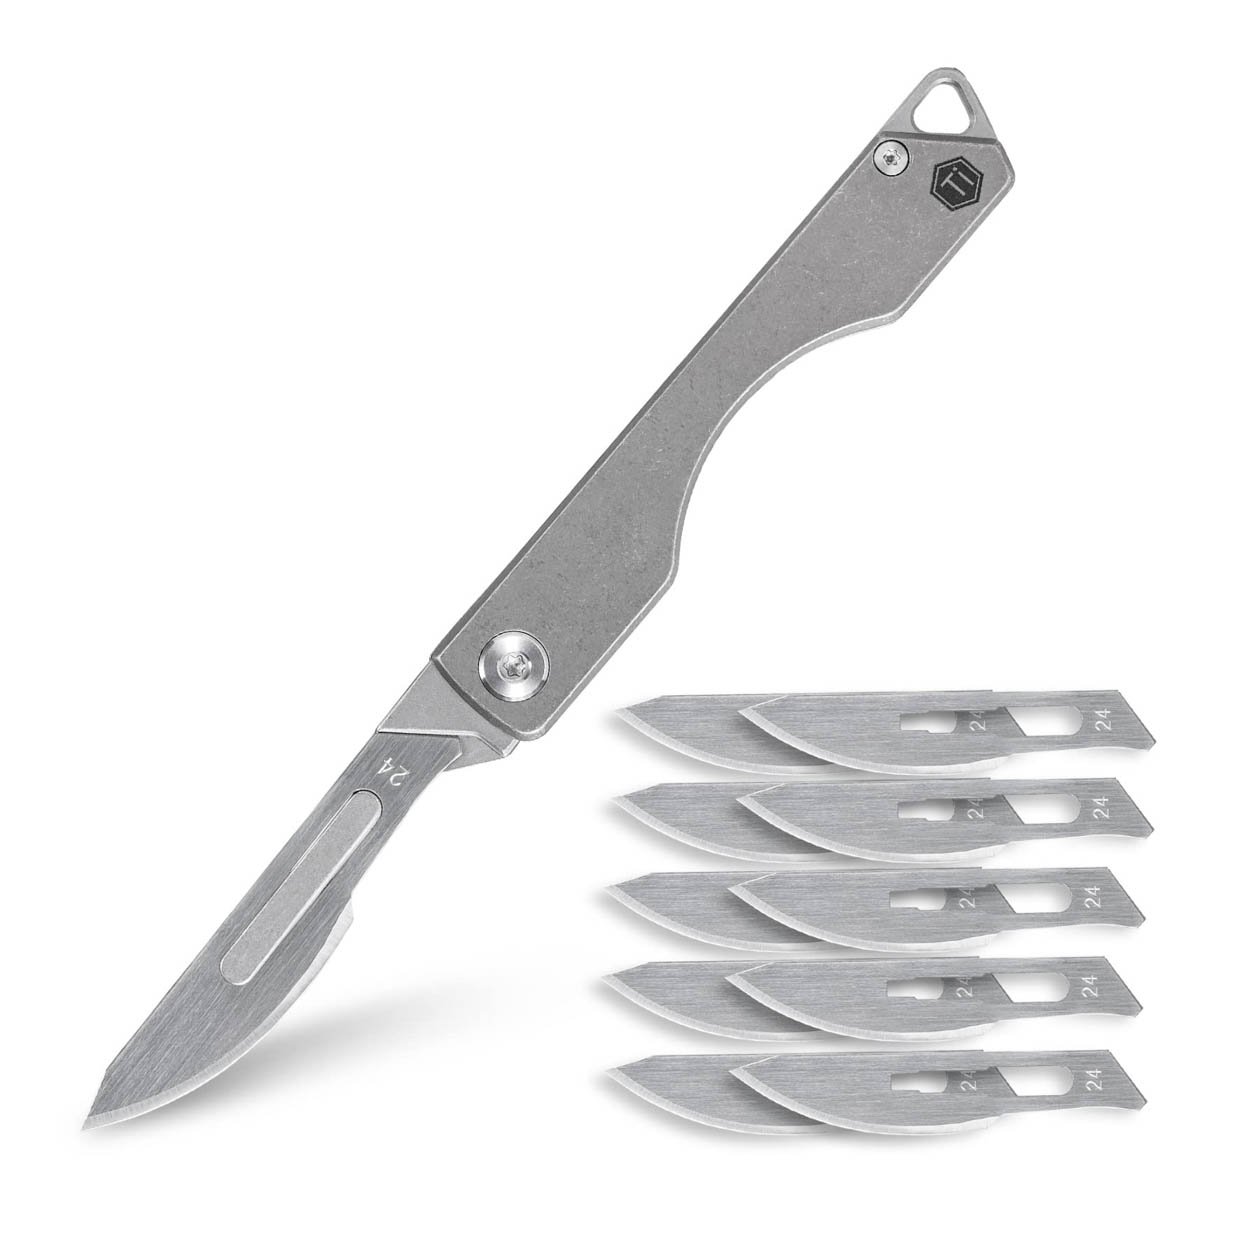 KeyUnity KK01 Utility Knife